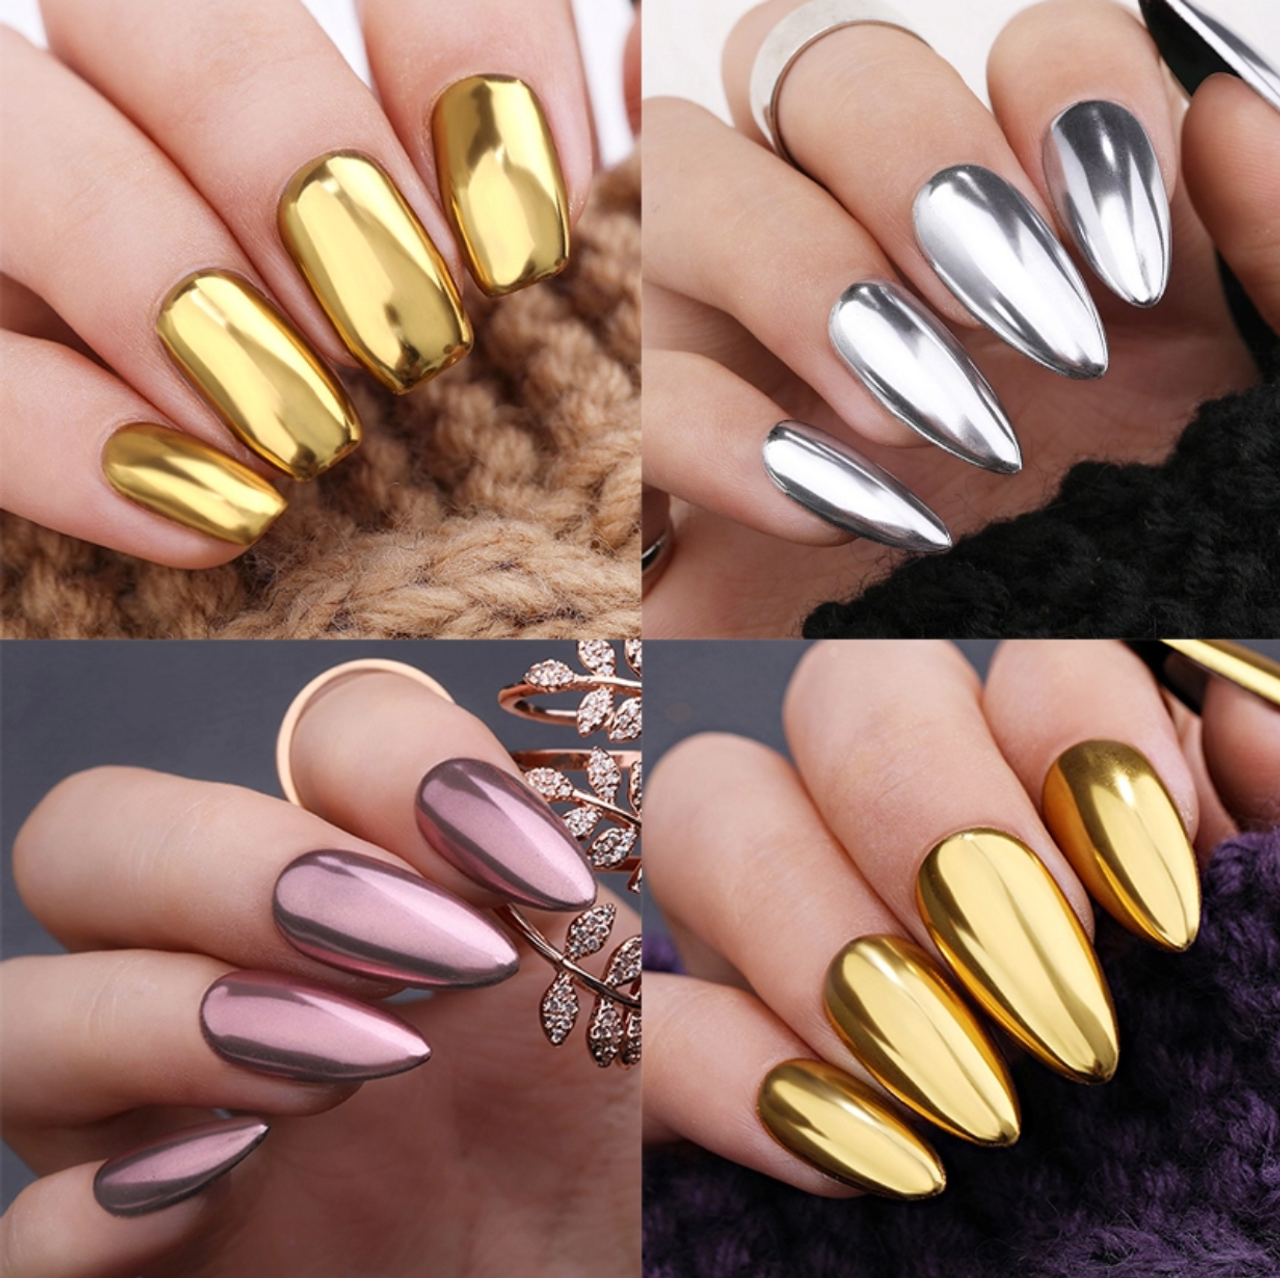 Vettsy Nail Art Chrome Powder-Gold Mirror Nails